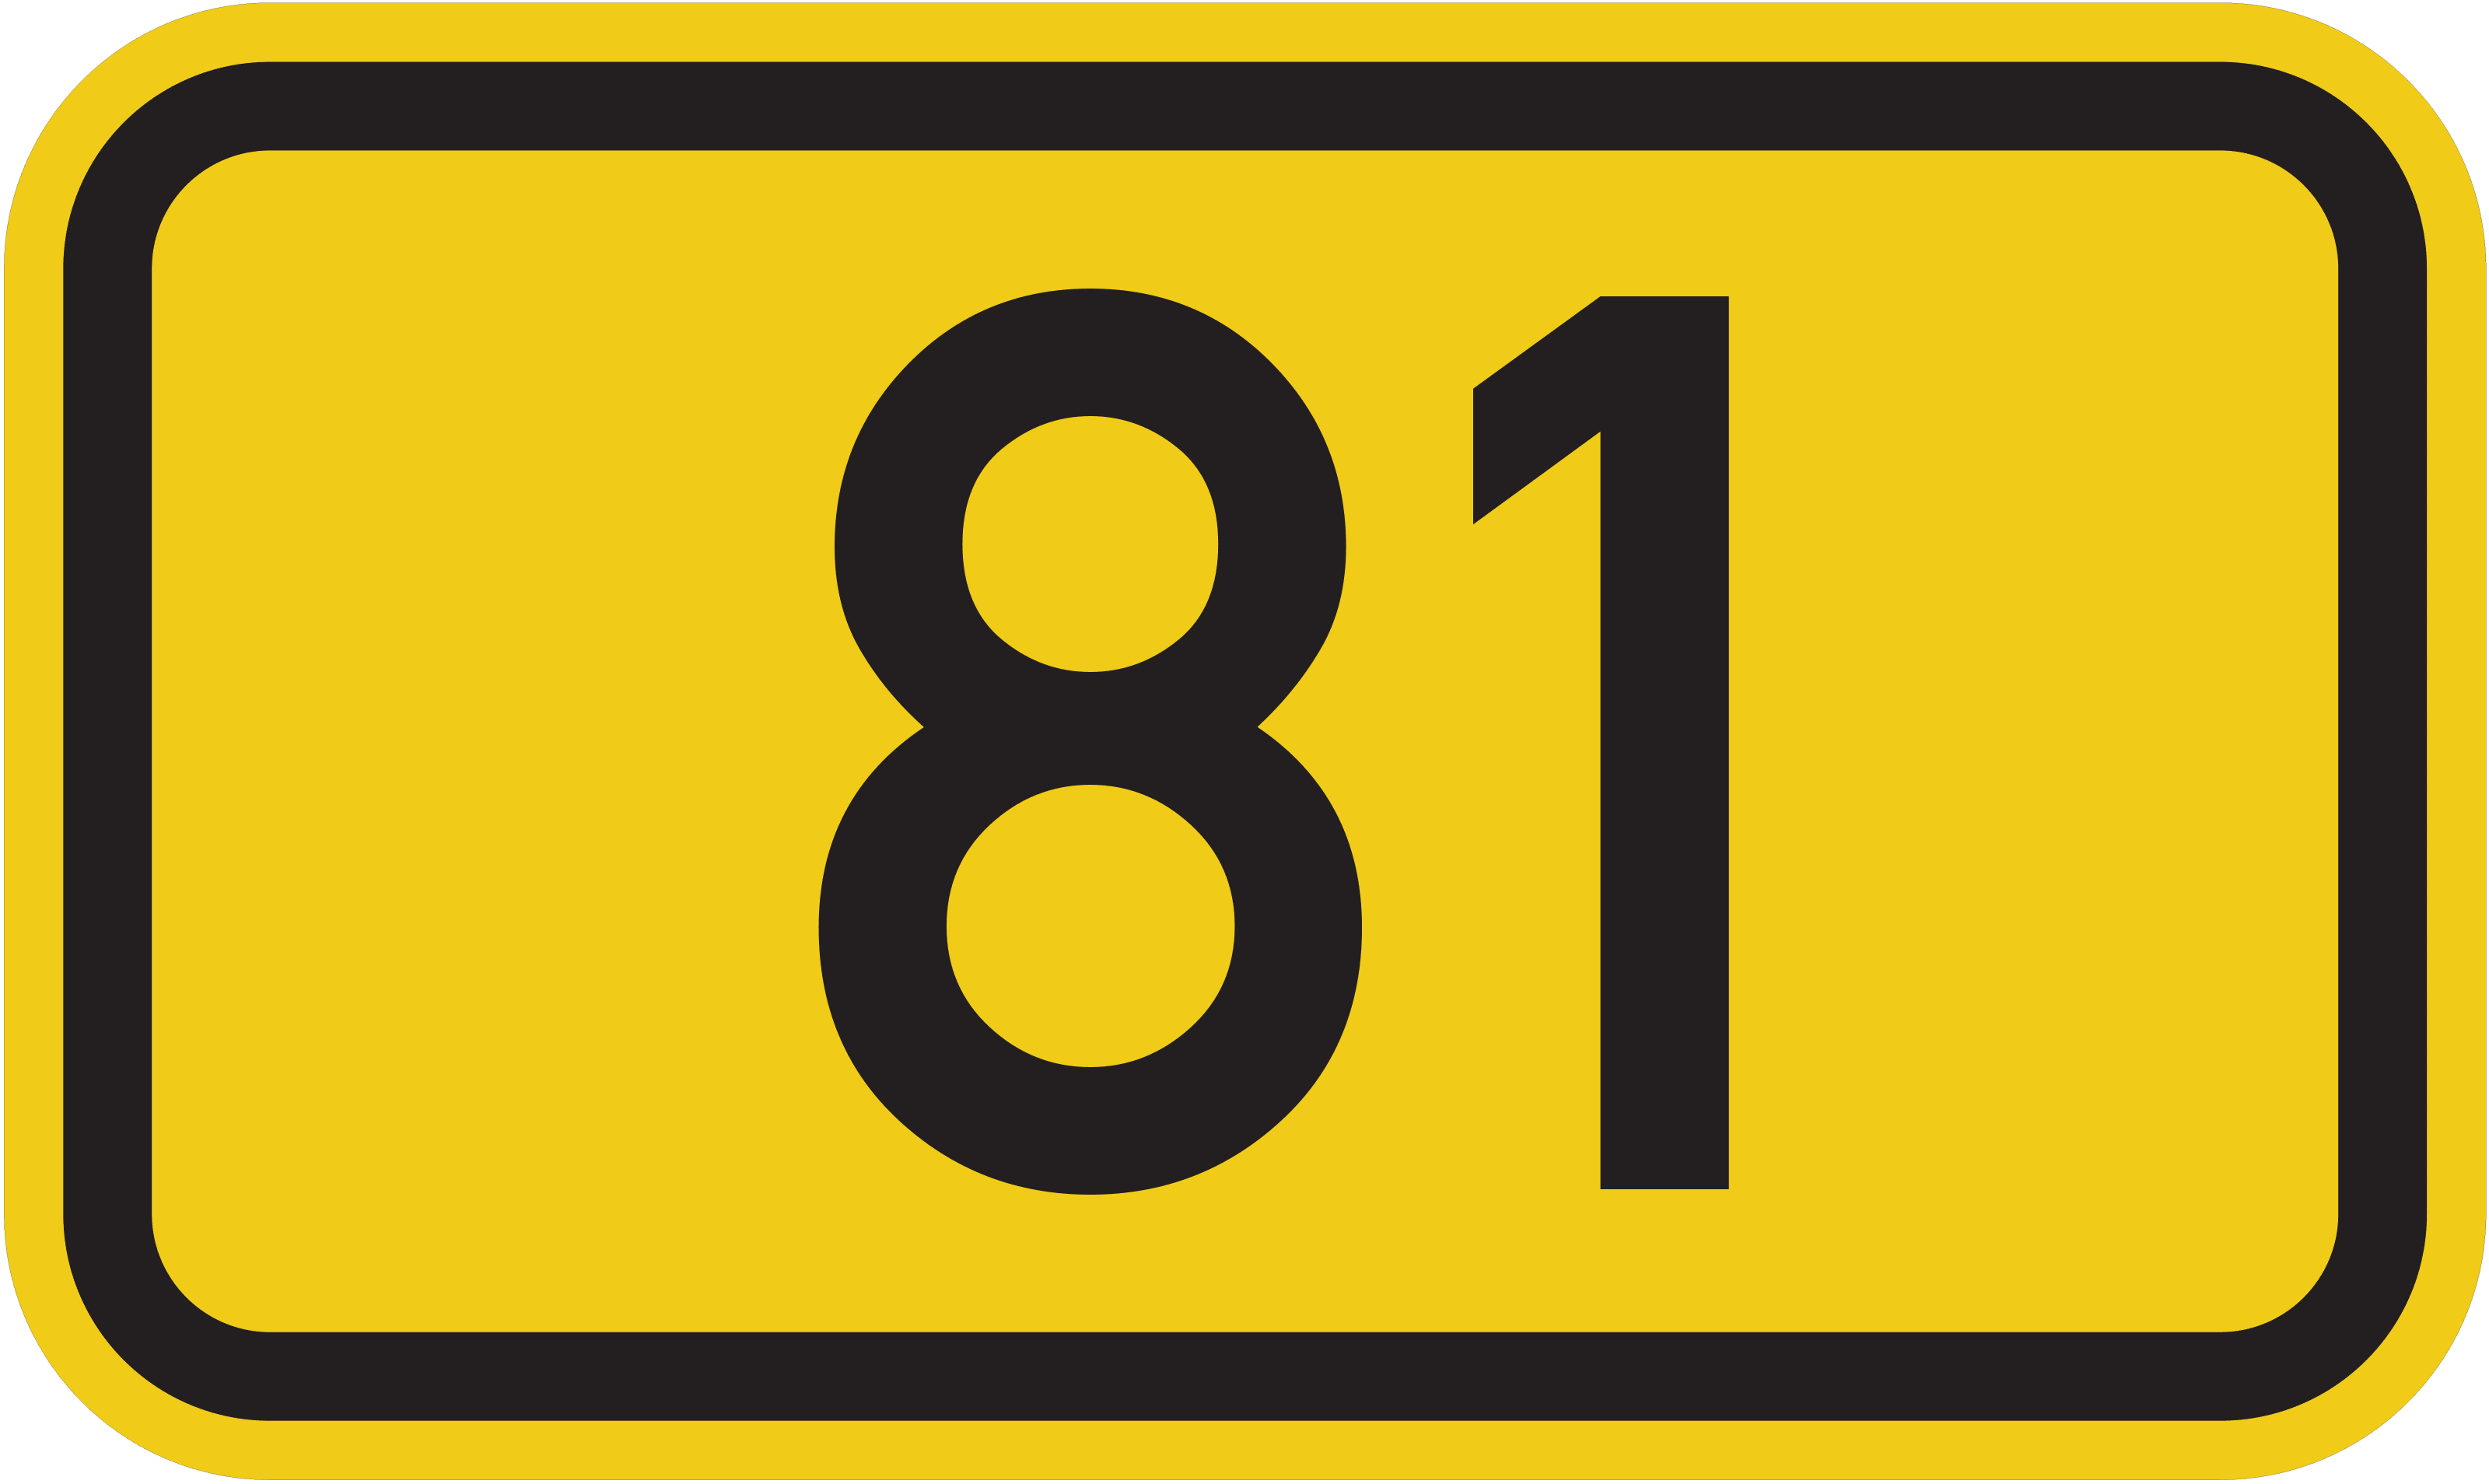 Bundesstraße B 81